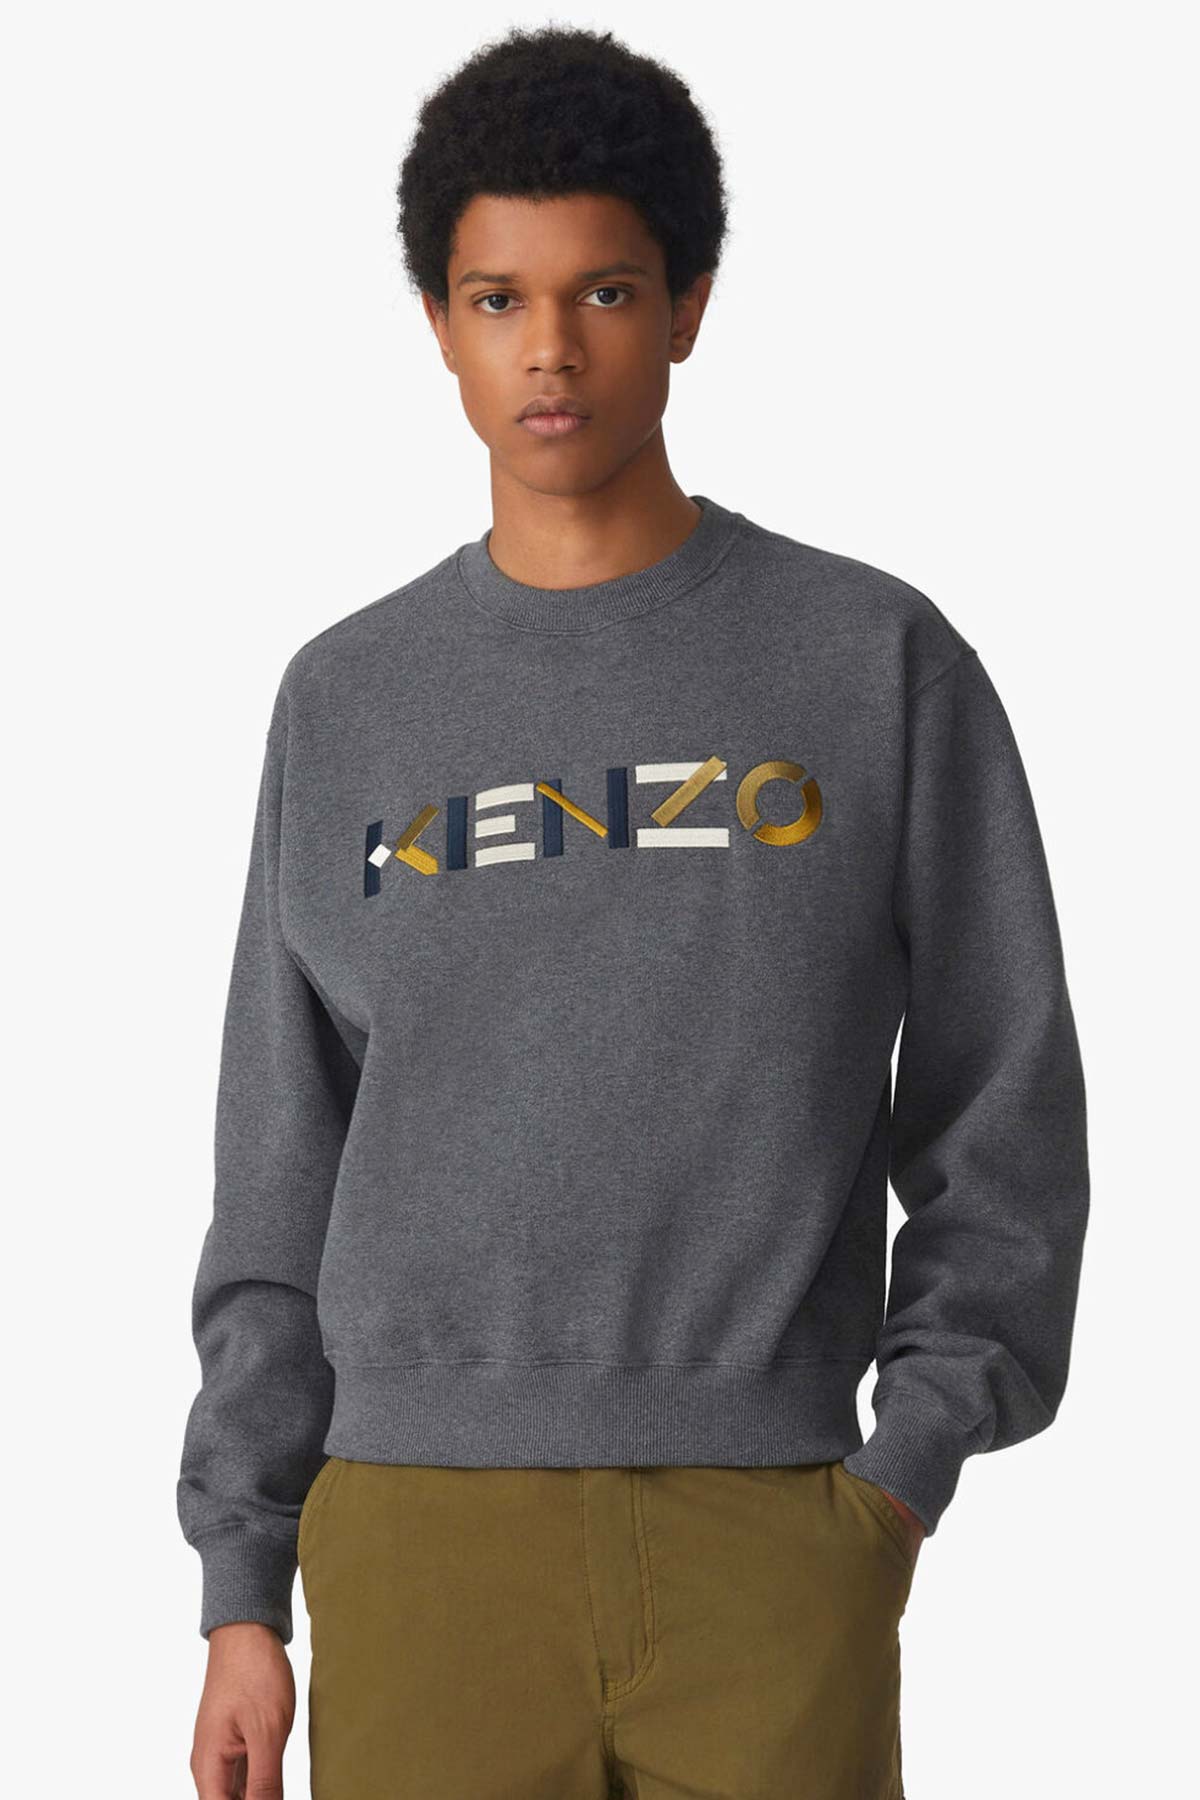 Kenzo Logo Sweatshirt-Libas Trendy Fashion Store